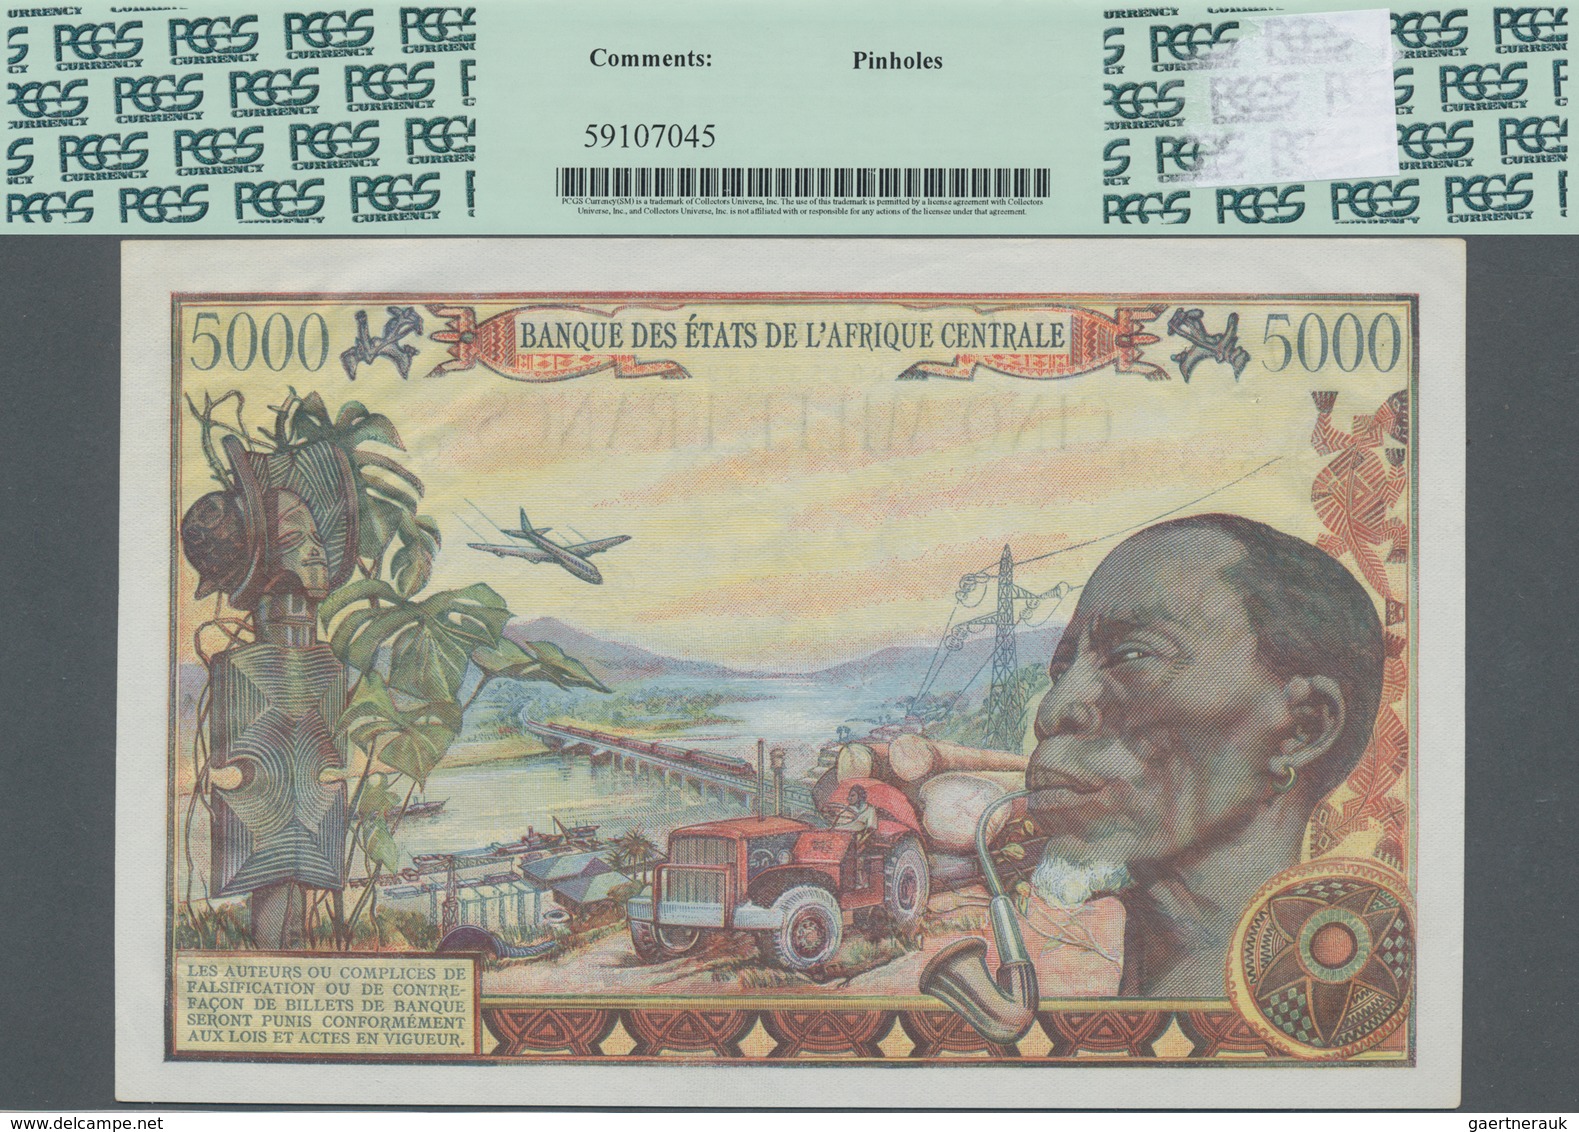 Chad / Tschad: Banque Des États De L'Afrique Centrale - République Du Tchad 5000 Francs 1980, P.8, G - Tschad